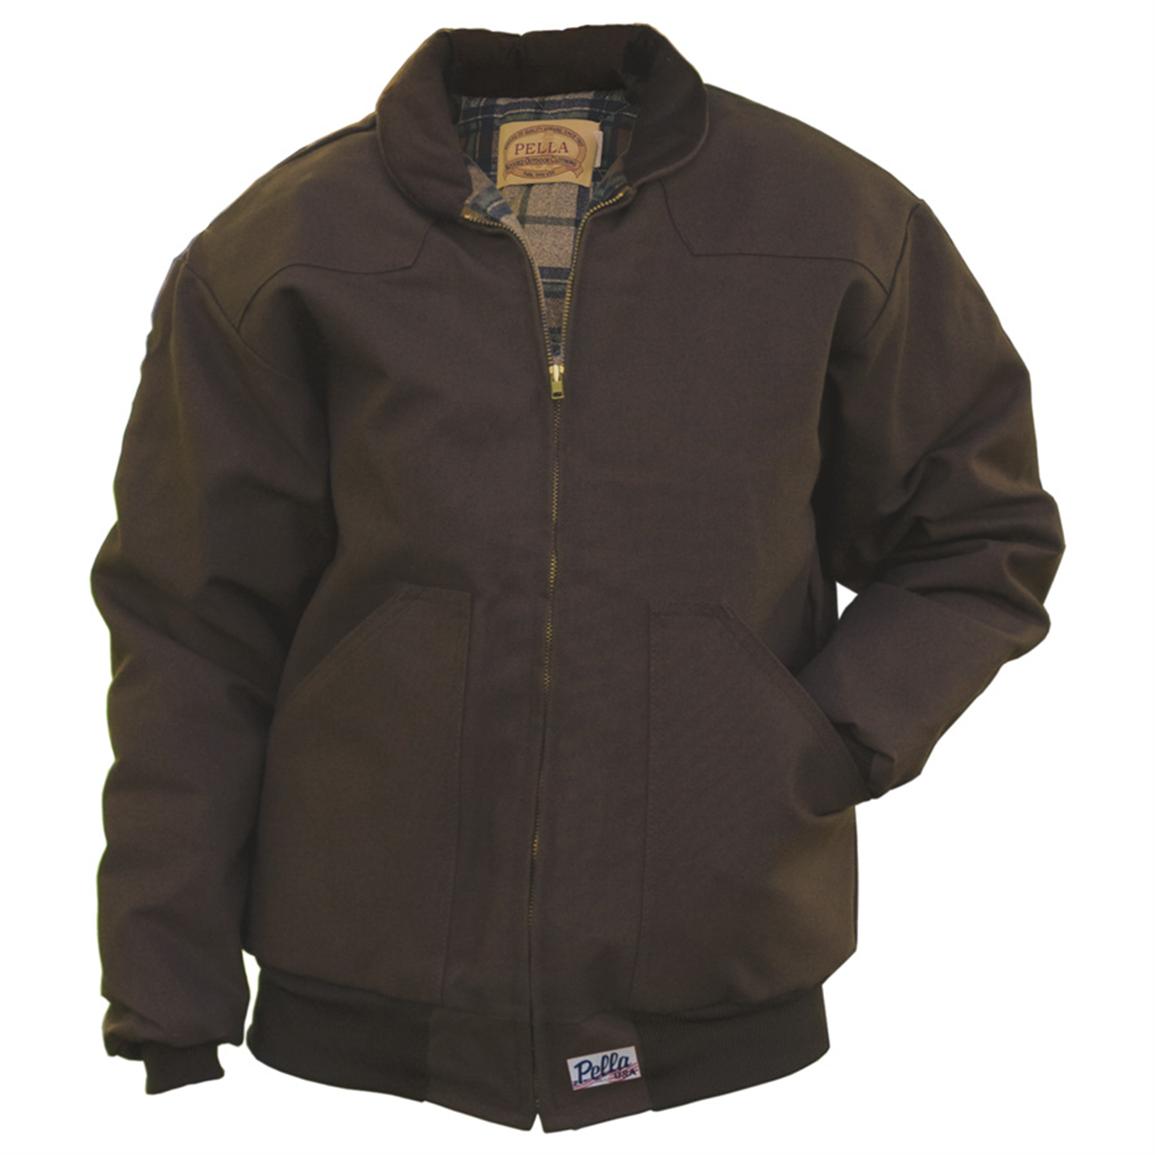 Men's Pella® Blender Jacket, Regular - 166575, Insulated Jackets ...